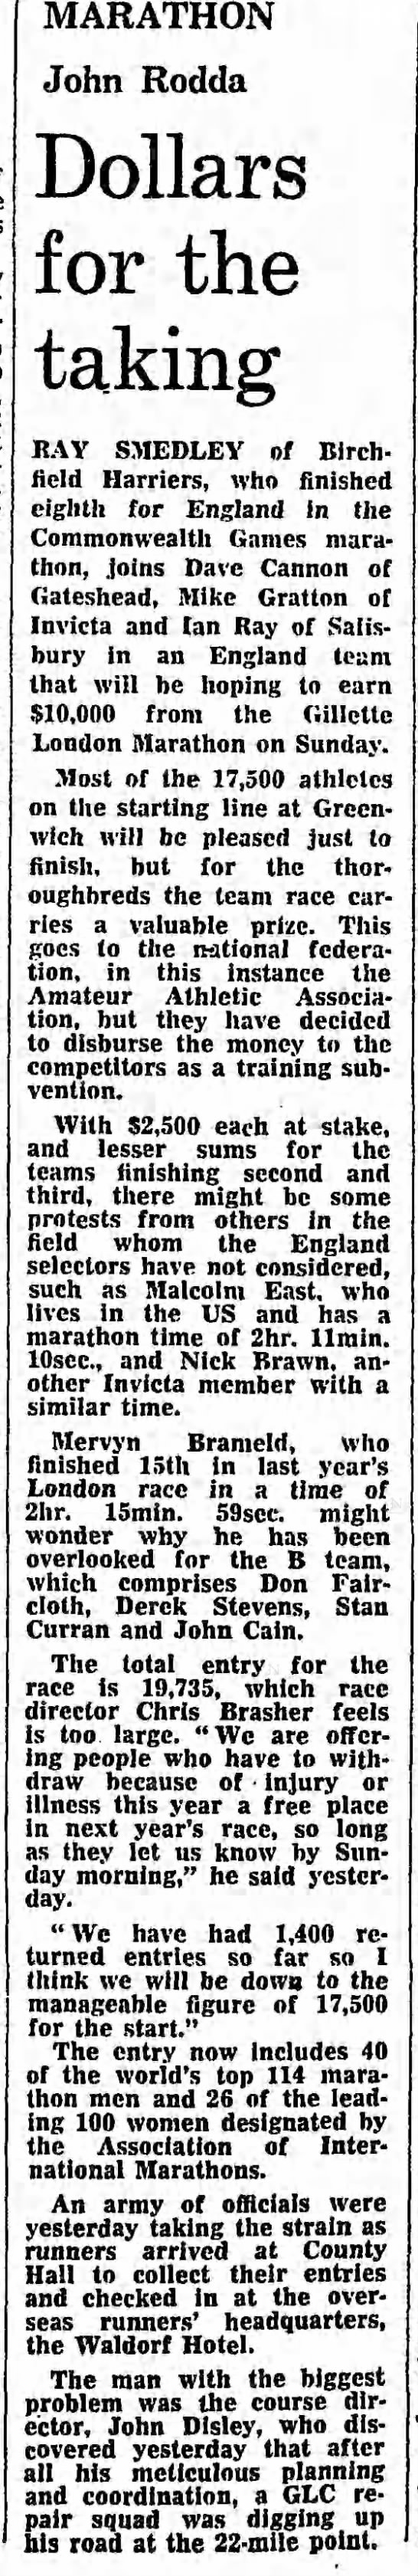 1983 London Marathon British competitors - 